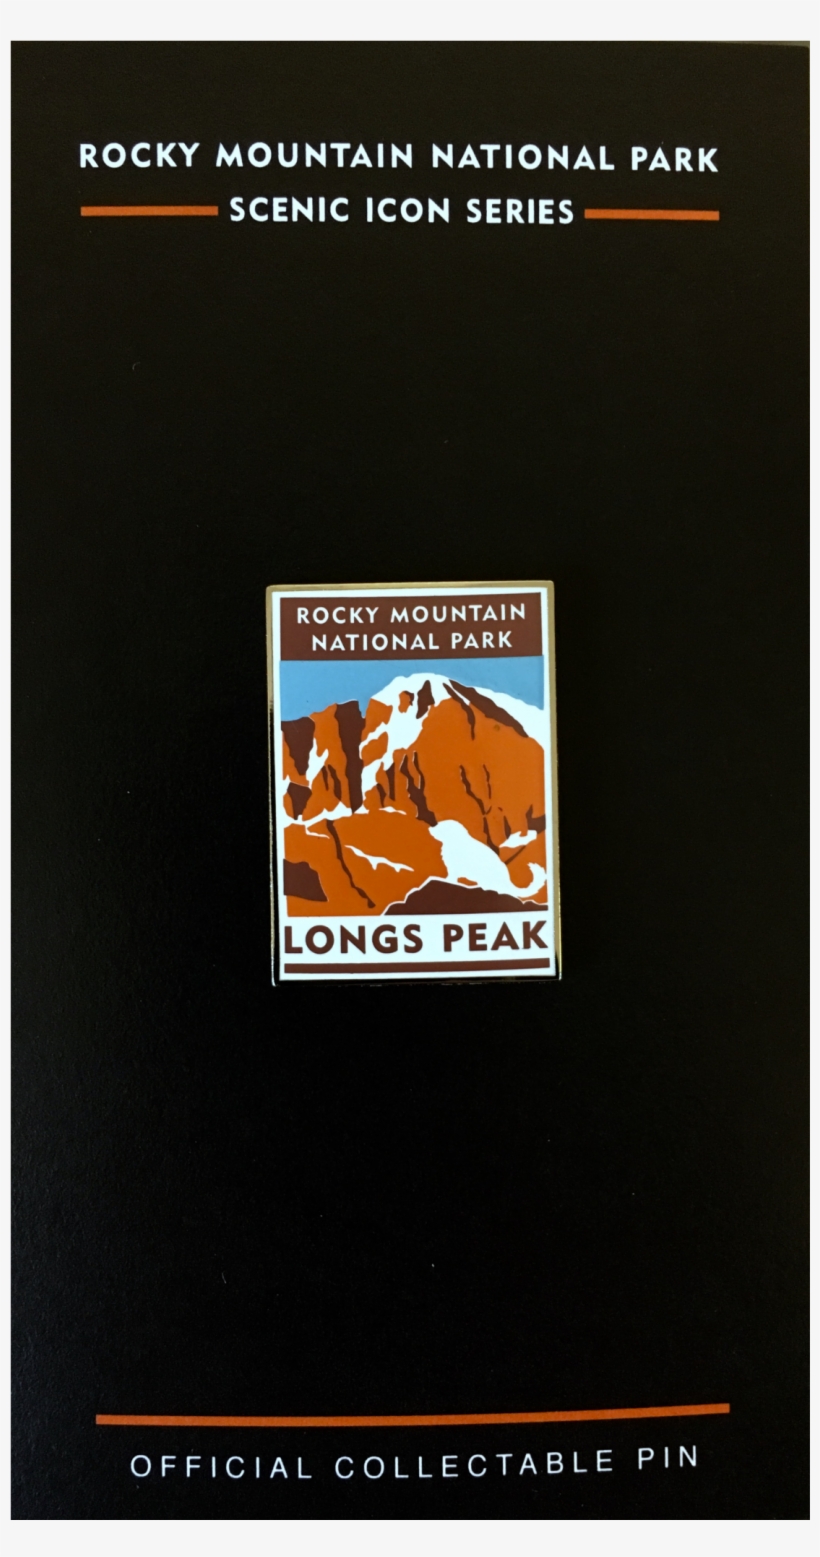 Rmnp Longs Peak Pin - Book, transparent png #7925830